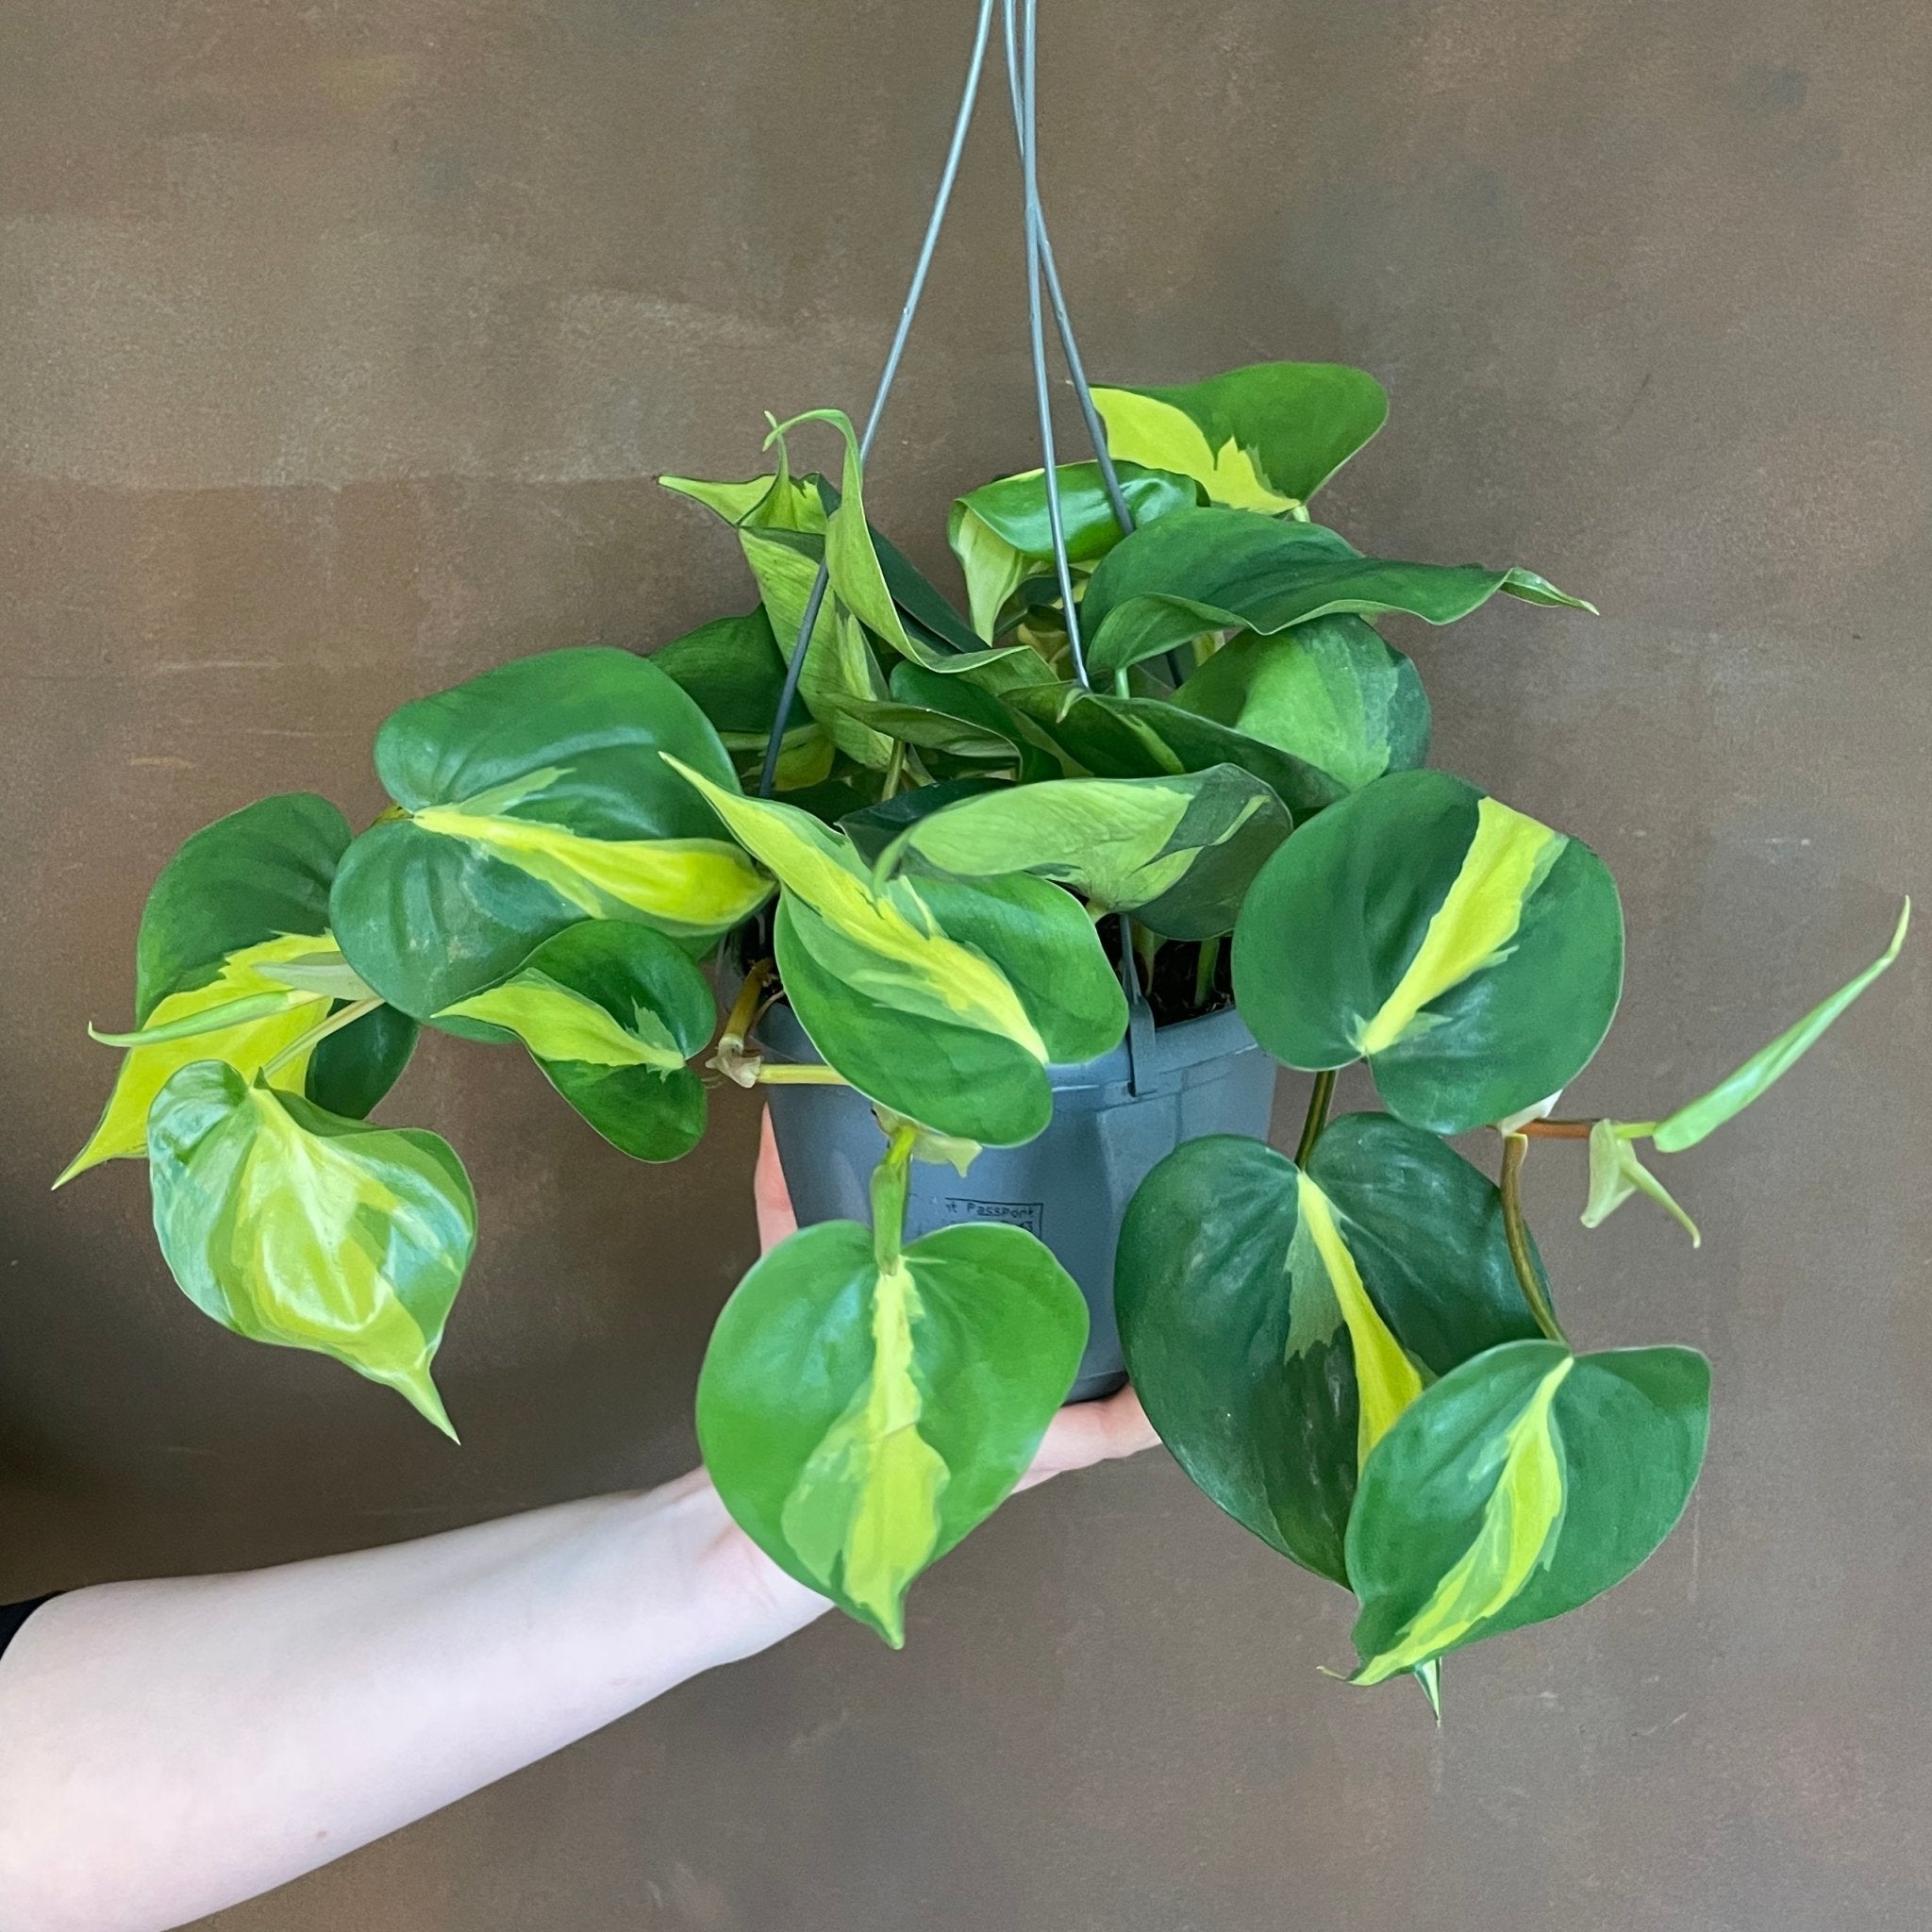 Philodendron ‘Brasil’ (15cm hangpot) - grow urban. UK